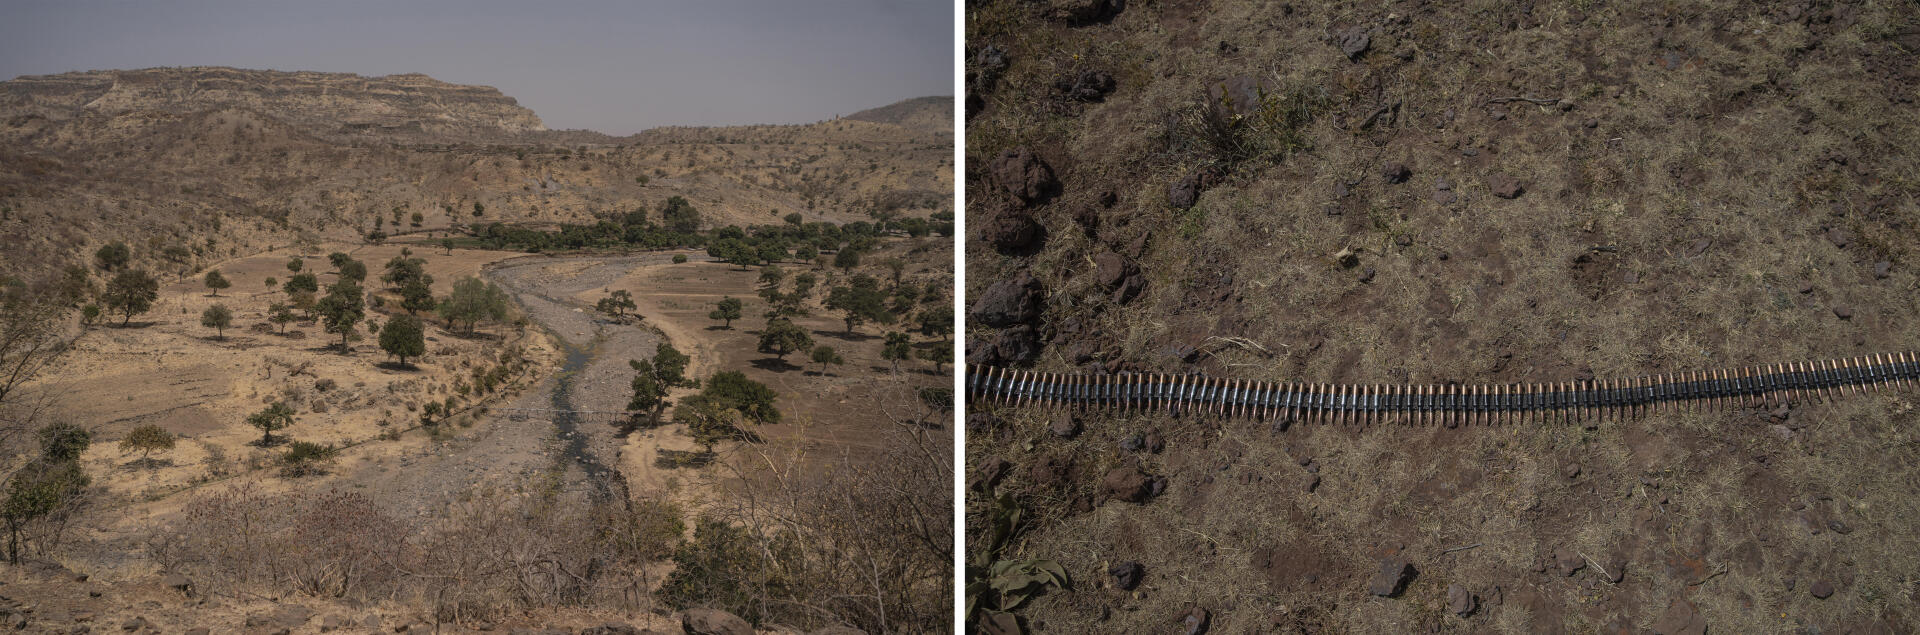 De gauche à droite : 1- En hiver, le wadi « Amur » est presque à sec. De nombreux éleveurs profitent de ce mince filet d’eau pour abreuver leurs bêtes. Des canaux d’irrigation acheminent l’eau vers des vergers situés en contrebas. Y poussent des orangers, des manguiers et toutes sortes de légumes. Vers l’est, les roches volcaniques du djebel Marra s’étendent à perte de vue. Plus on redescend, plus le climat est aride et les collines jaunies par le soleil. 2- Des munitions pour la mitrailleuse située en haut de la colline Difa, une position tenue par les rebelles de l’ALS. Djebel Marra, Darfour, Soudan, les 18 et 19 février 2021.